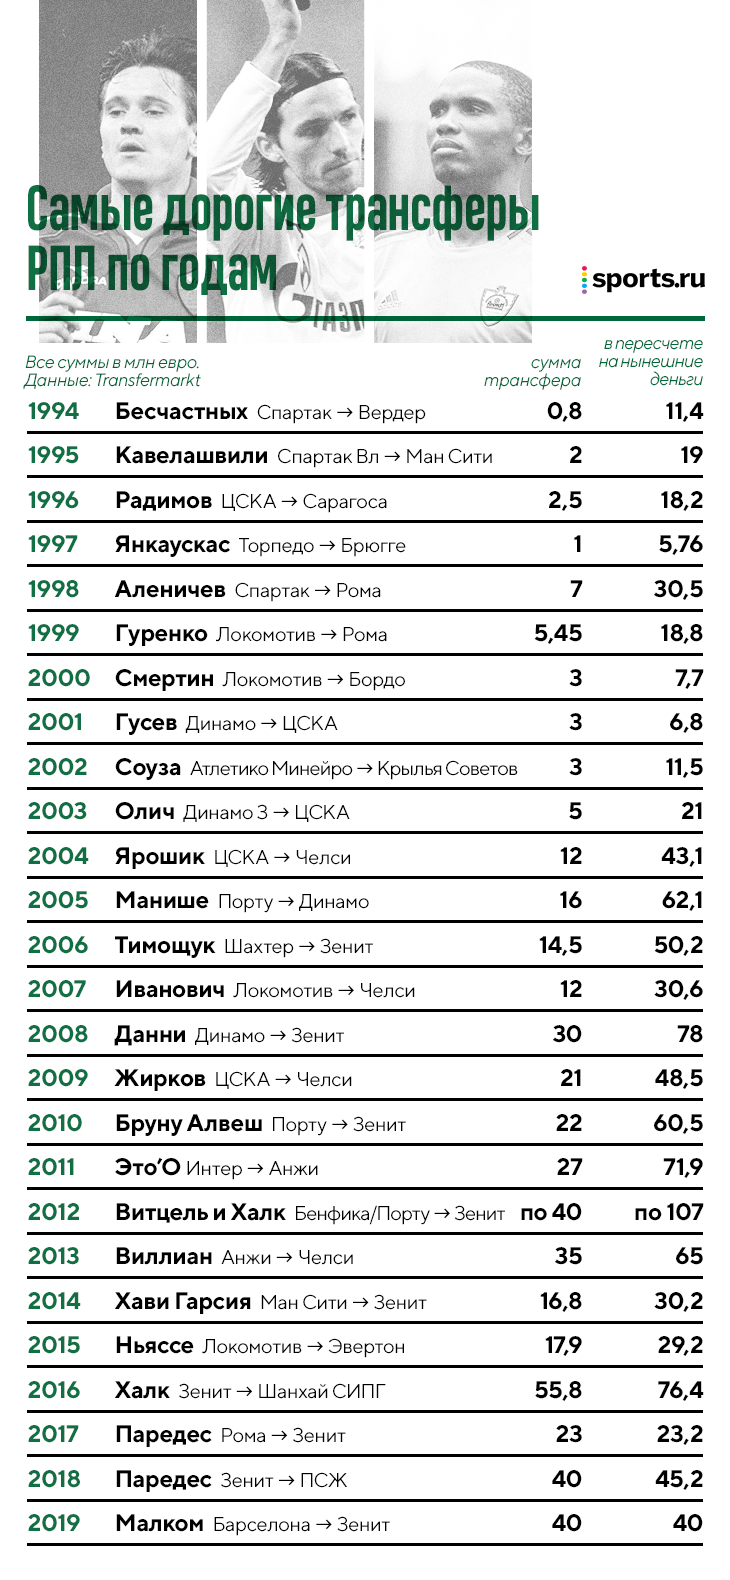 Пересчитали ретротрансферы на современные деньги: за Халка и Витцеля отдали более 200 млн евро, за Аленичева в 98-м получили 30! 